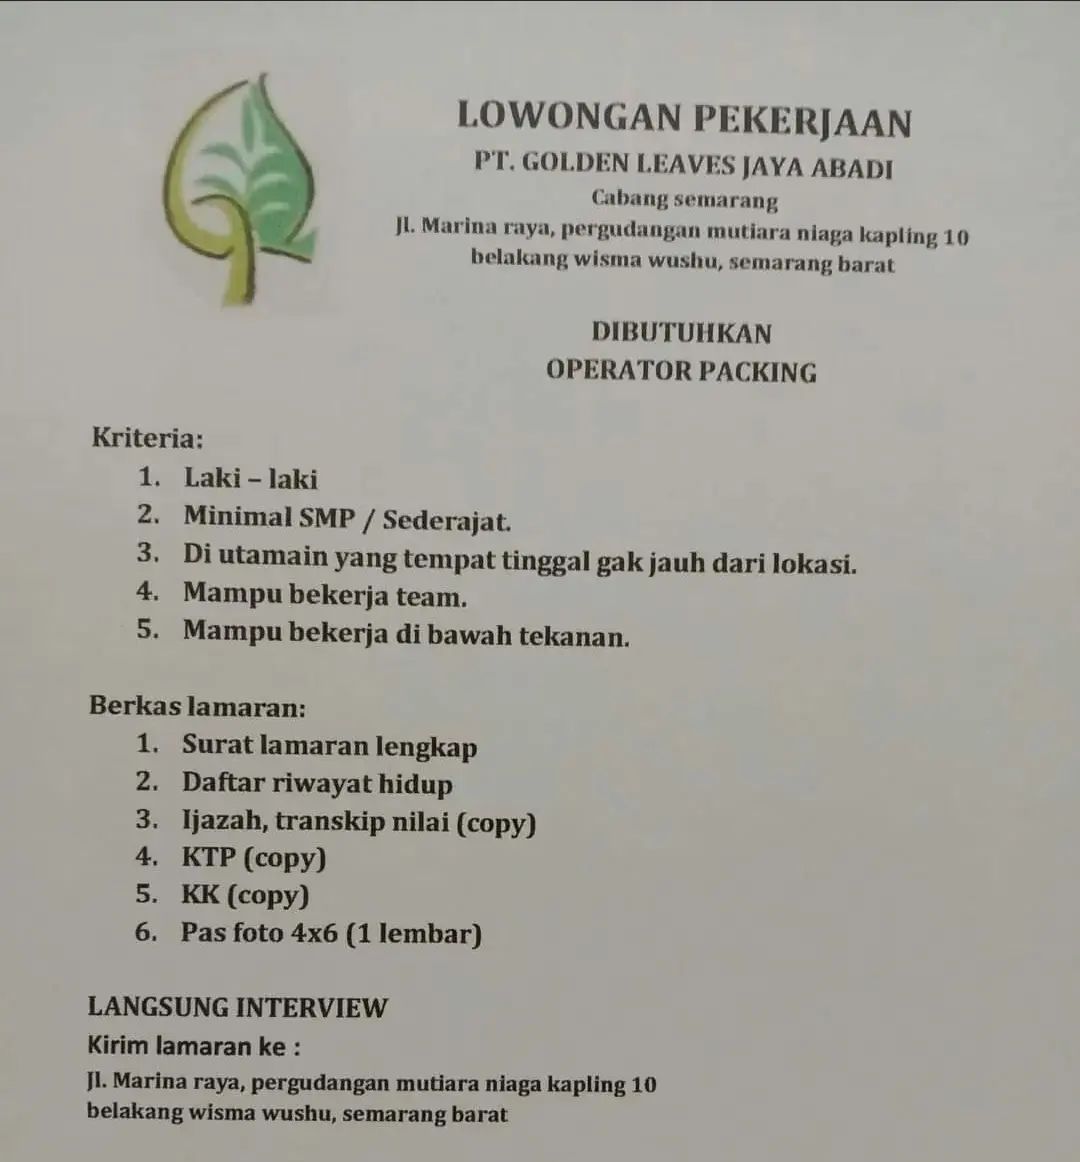 Lowongan Kerja Operator Packing di PT. Golden Leaves Jaya Semarang